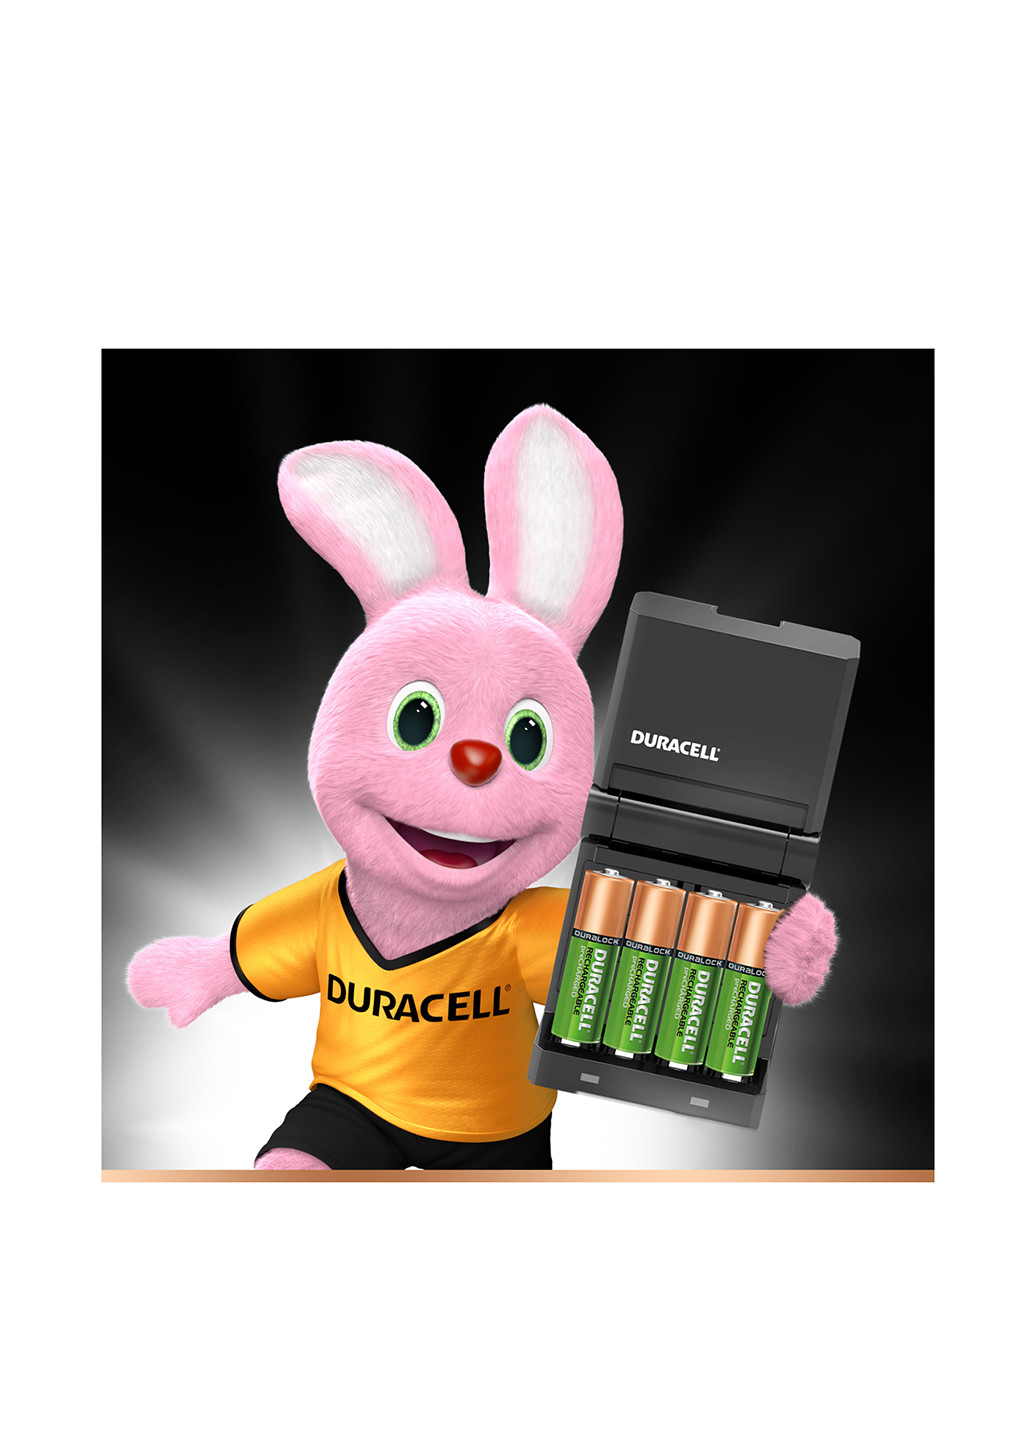 Зарядний пристрій для акумуляторів CEF27 AA 25002 AAA 850 (1 шт.) Duracell (43215163)